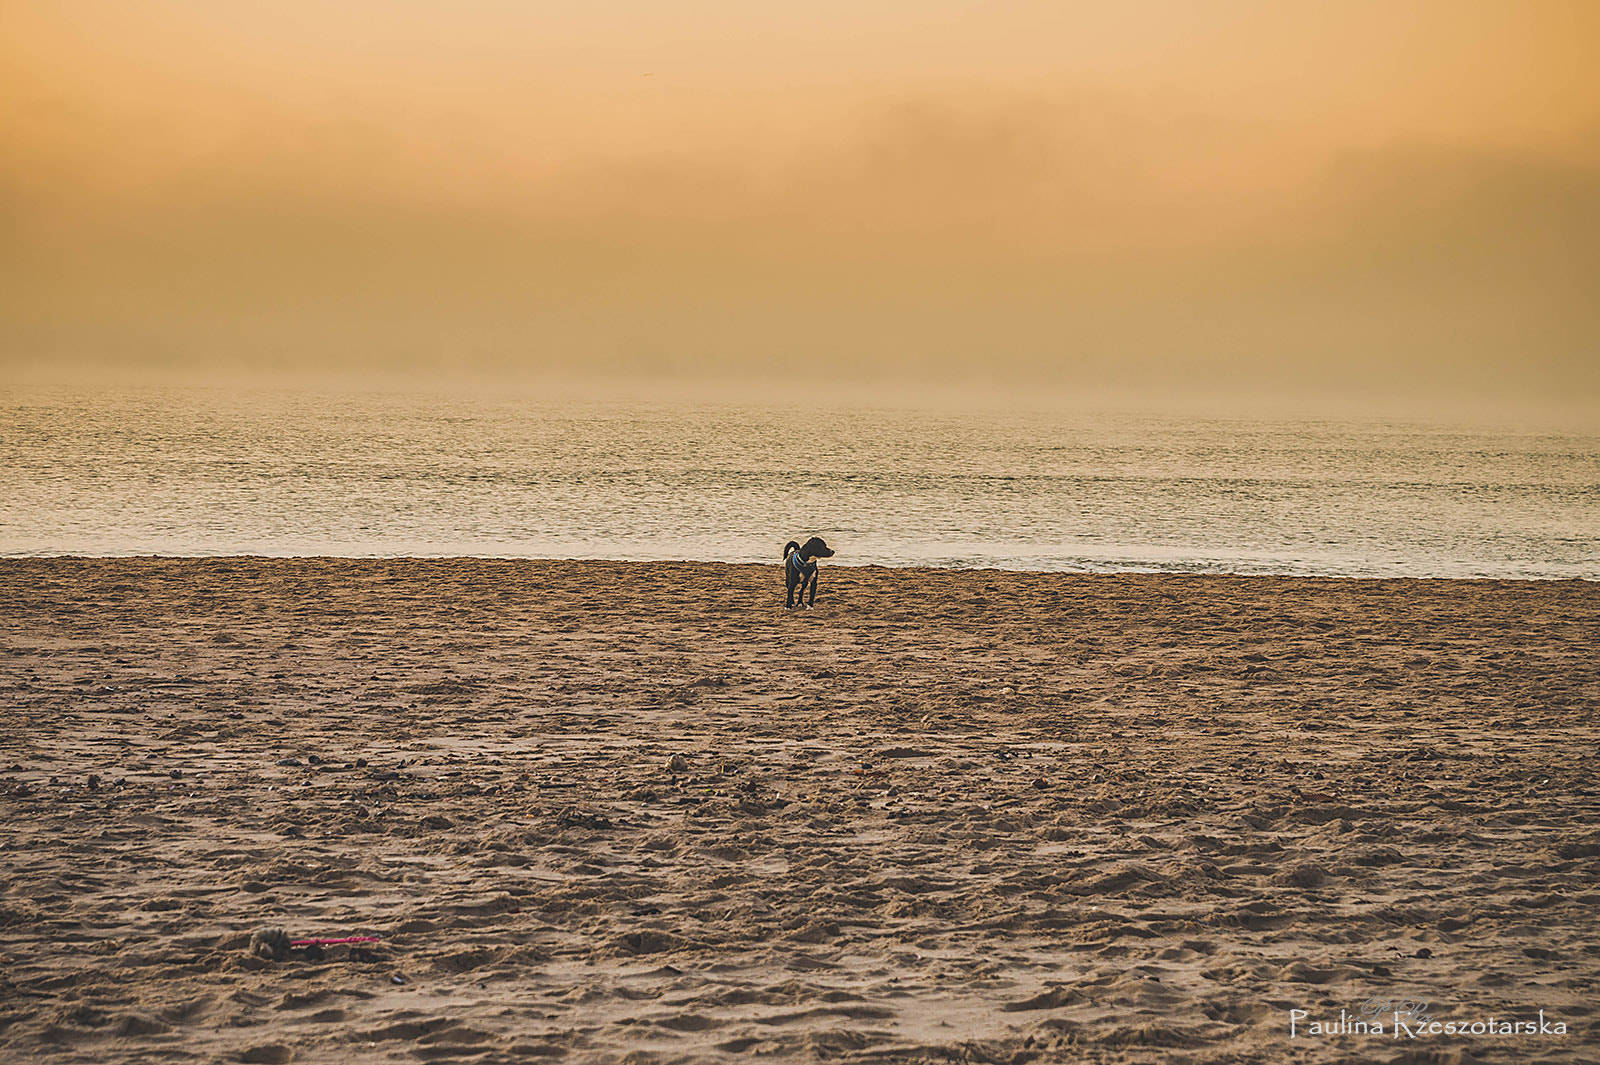 Sony SLT-A58 sample photo. Dog on the beach photography